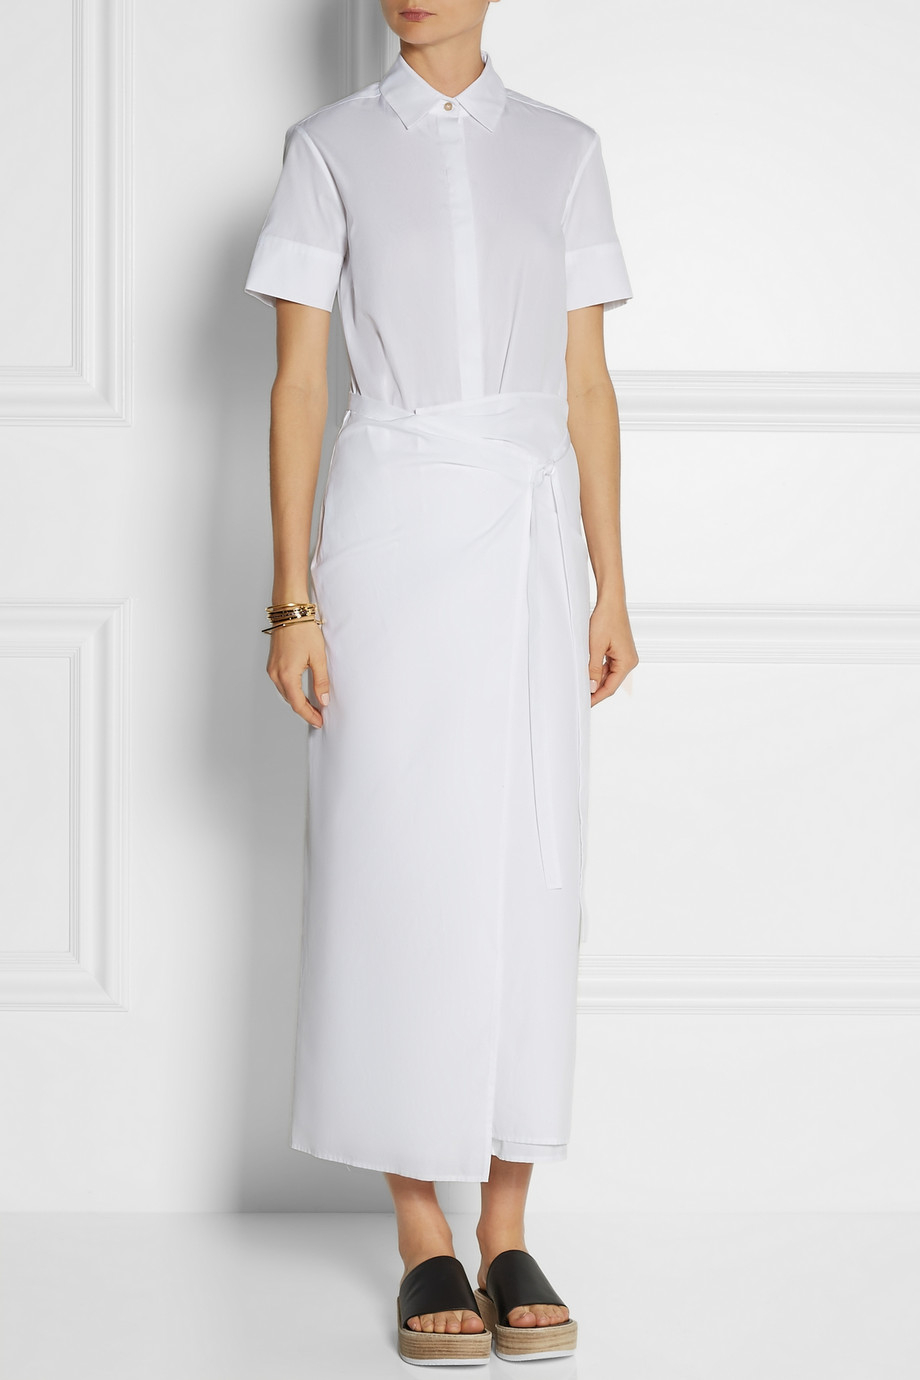 Lyst - Rosetta Getty Wrap-effect Cotton-poplin Midi Dress in White